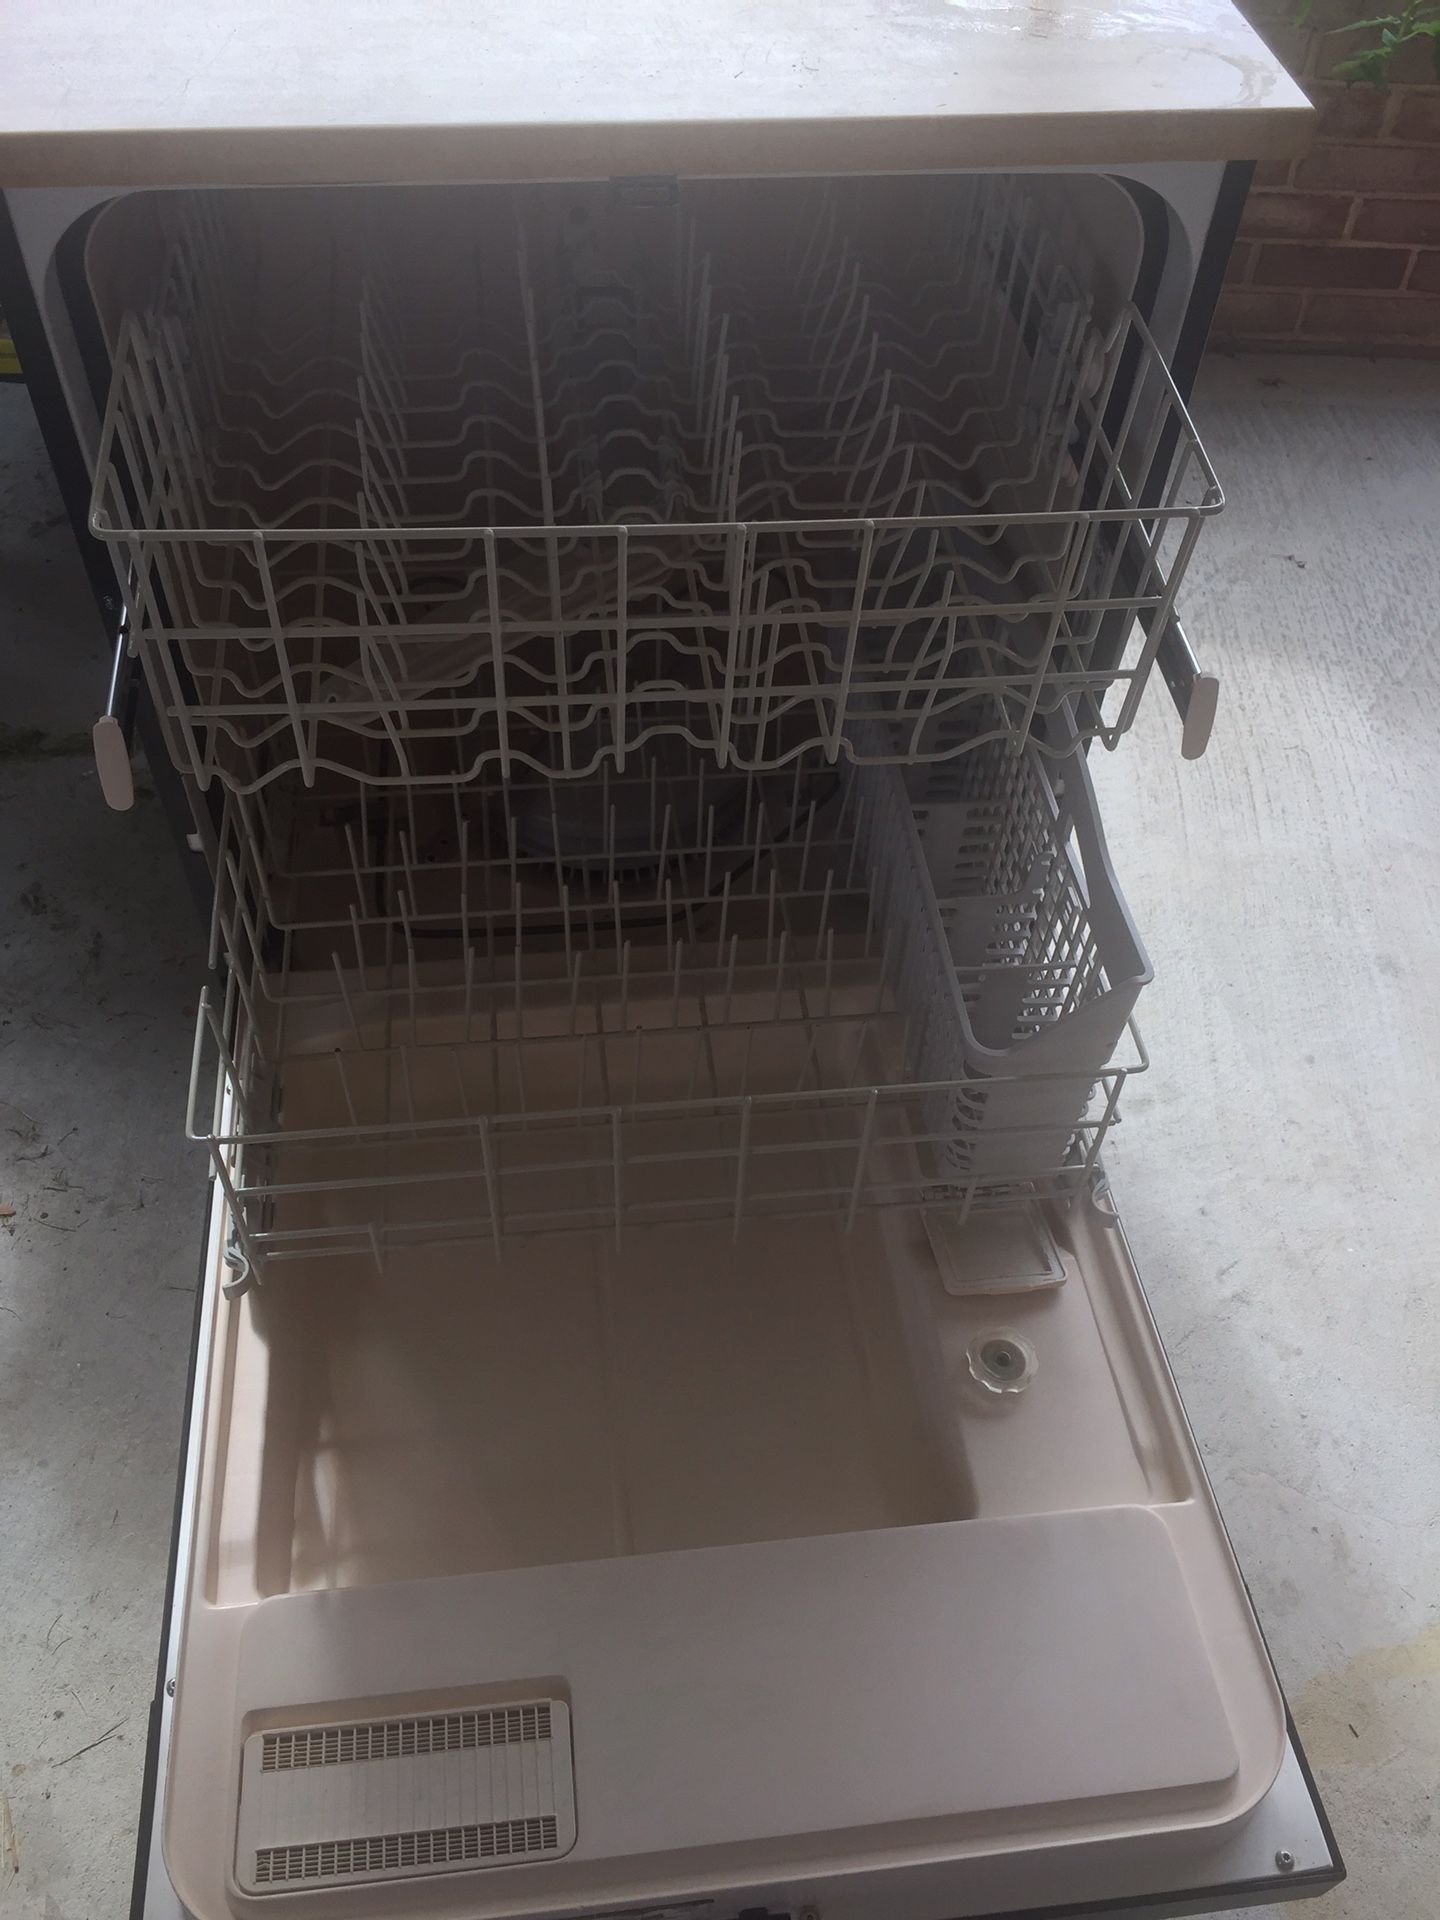 Kenmore portable dishwasher